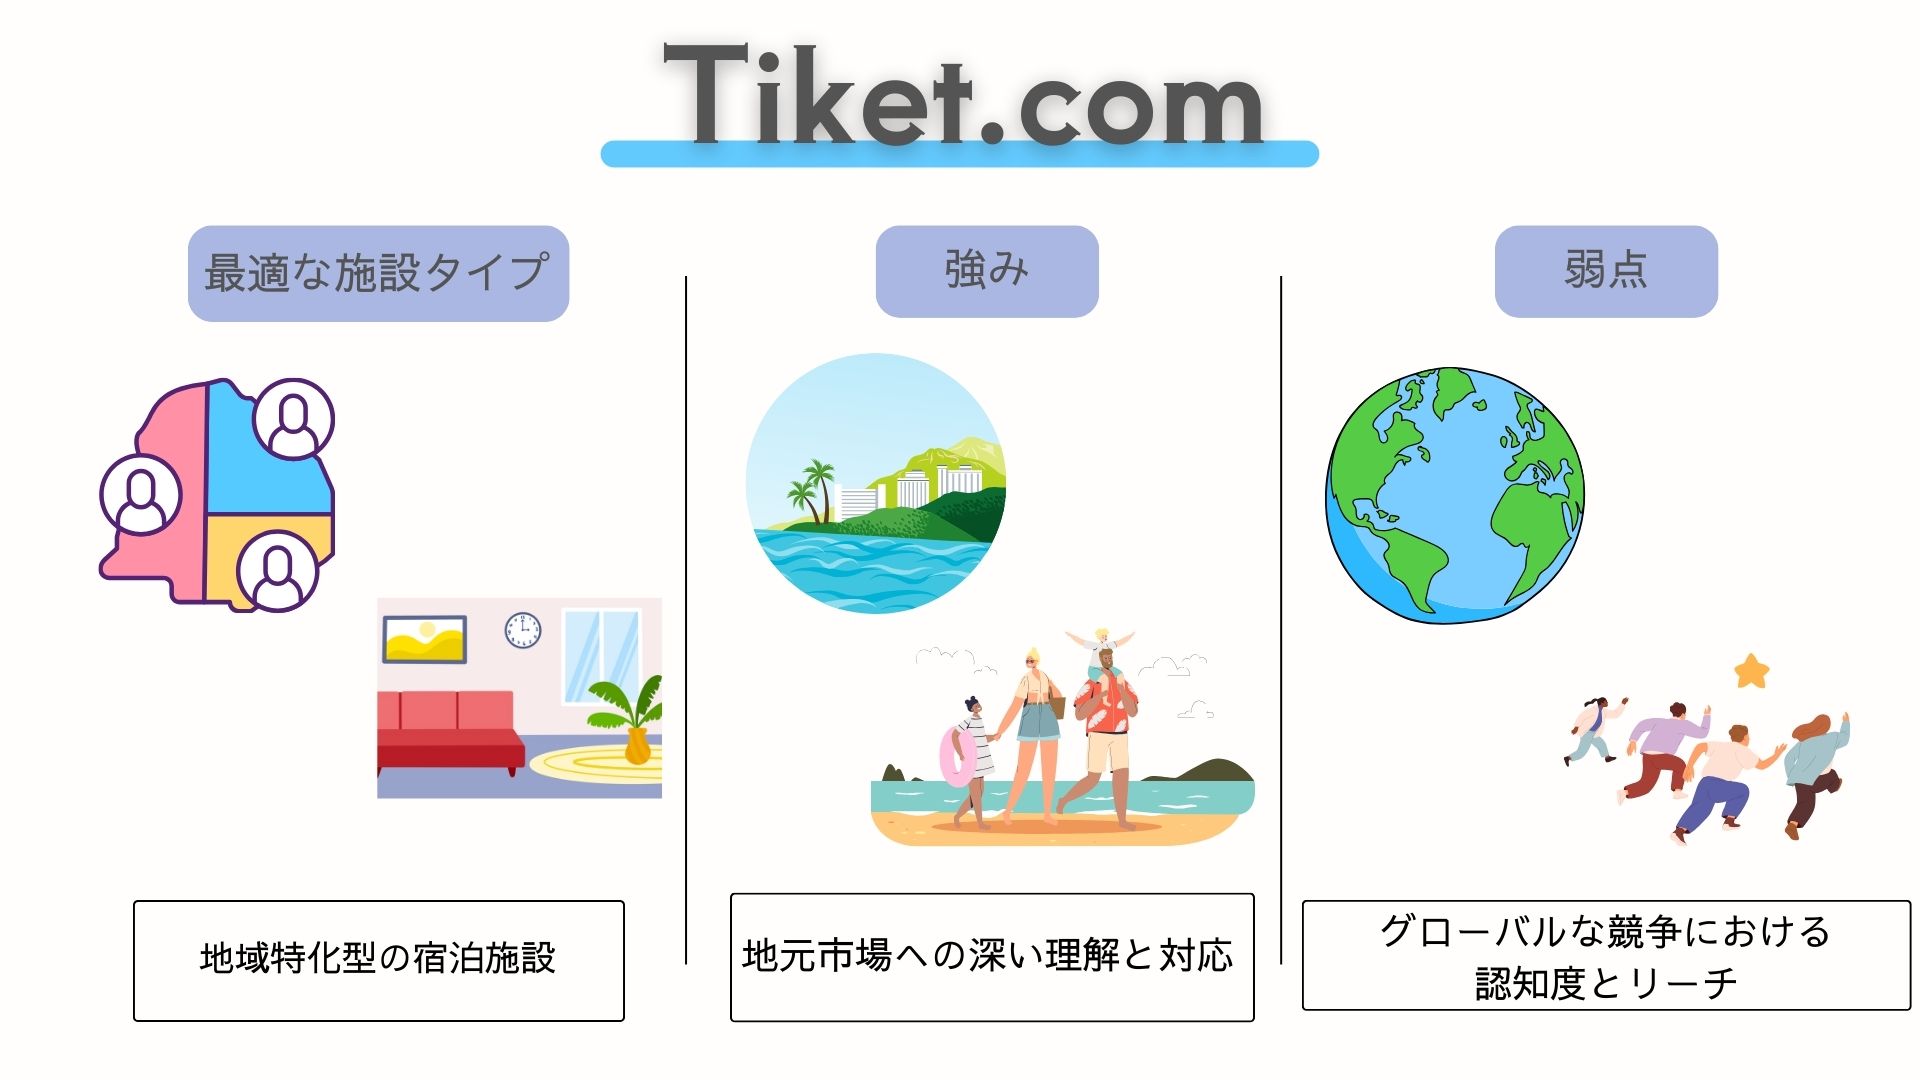  Tiket.com